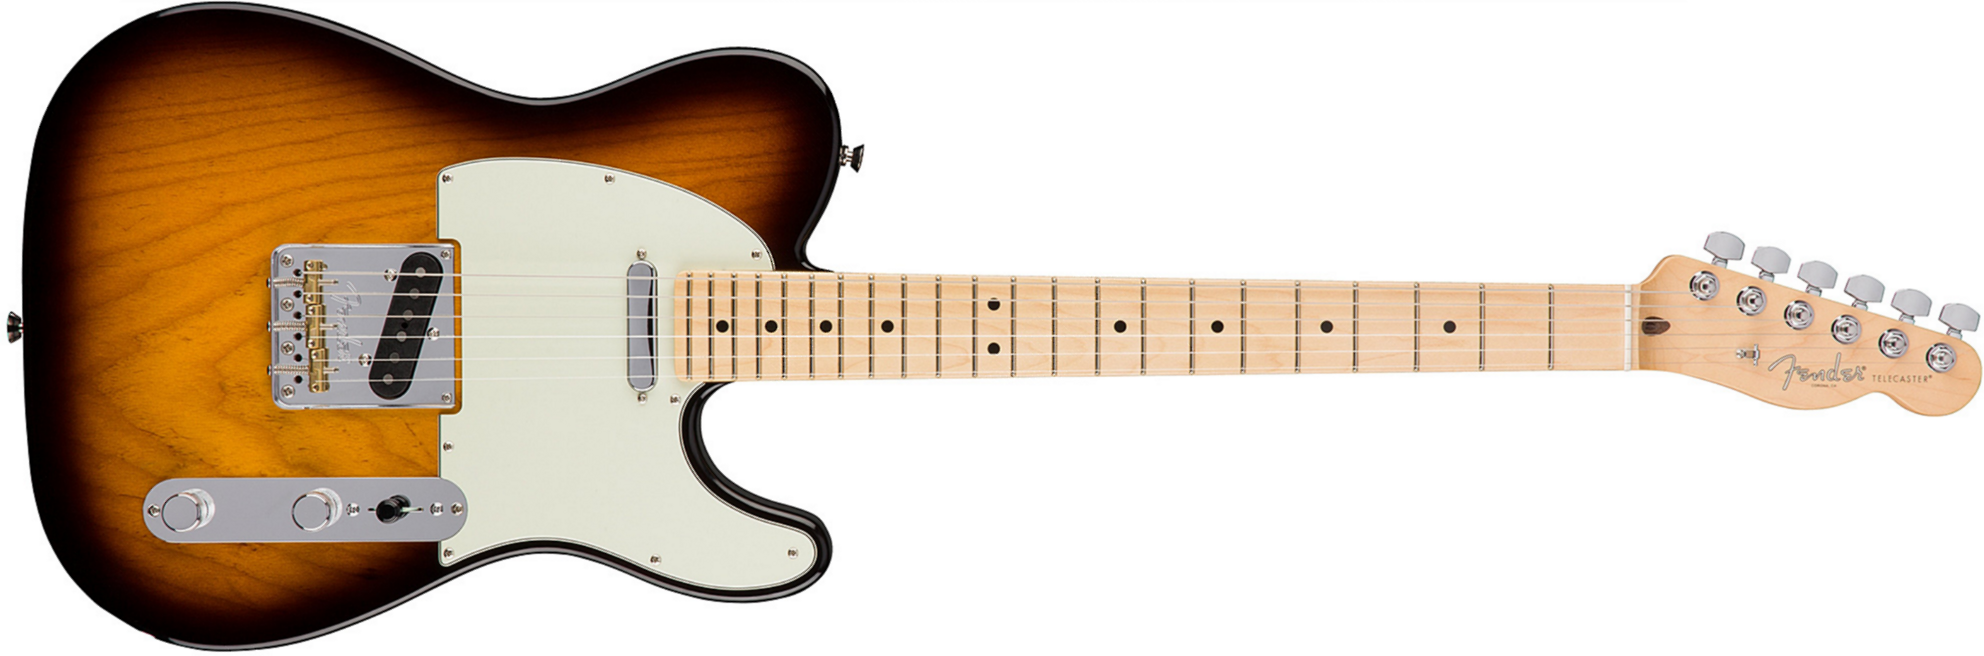 Fender Tele American Professional 2s Usa Mn - 2-color Sunburst - E-Gitarre in Teleform - Main picture